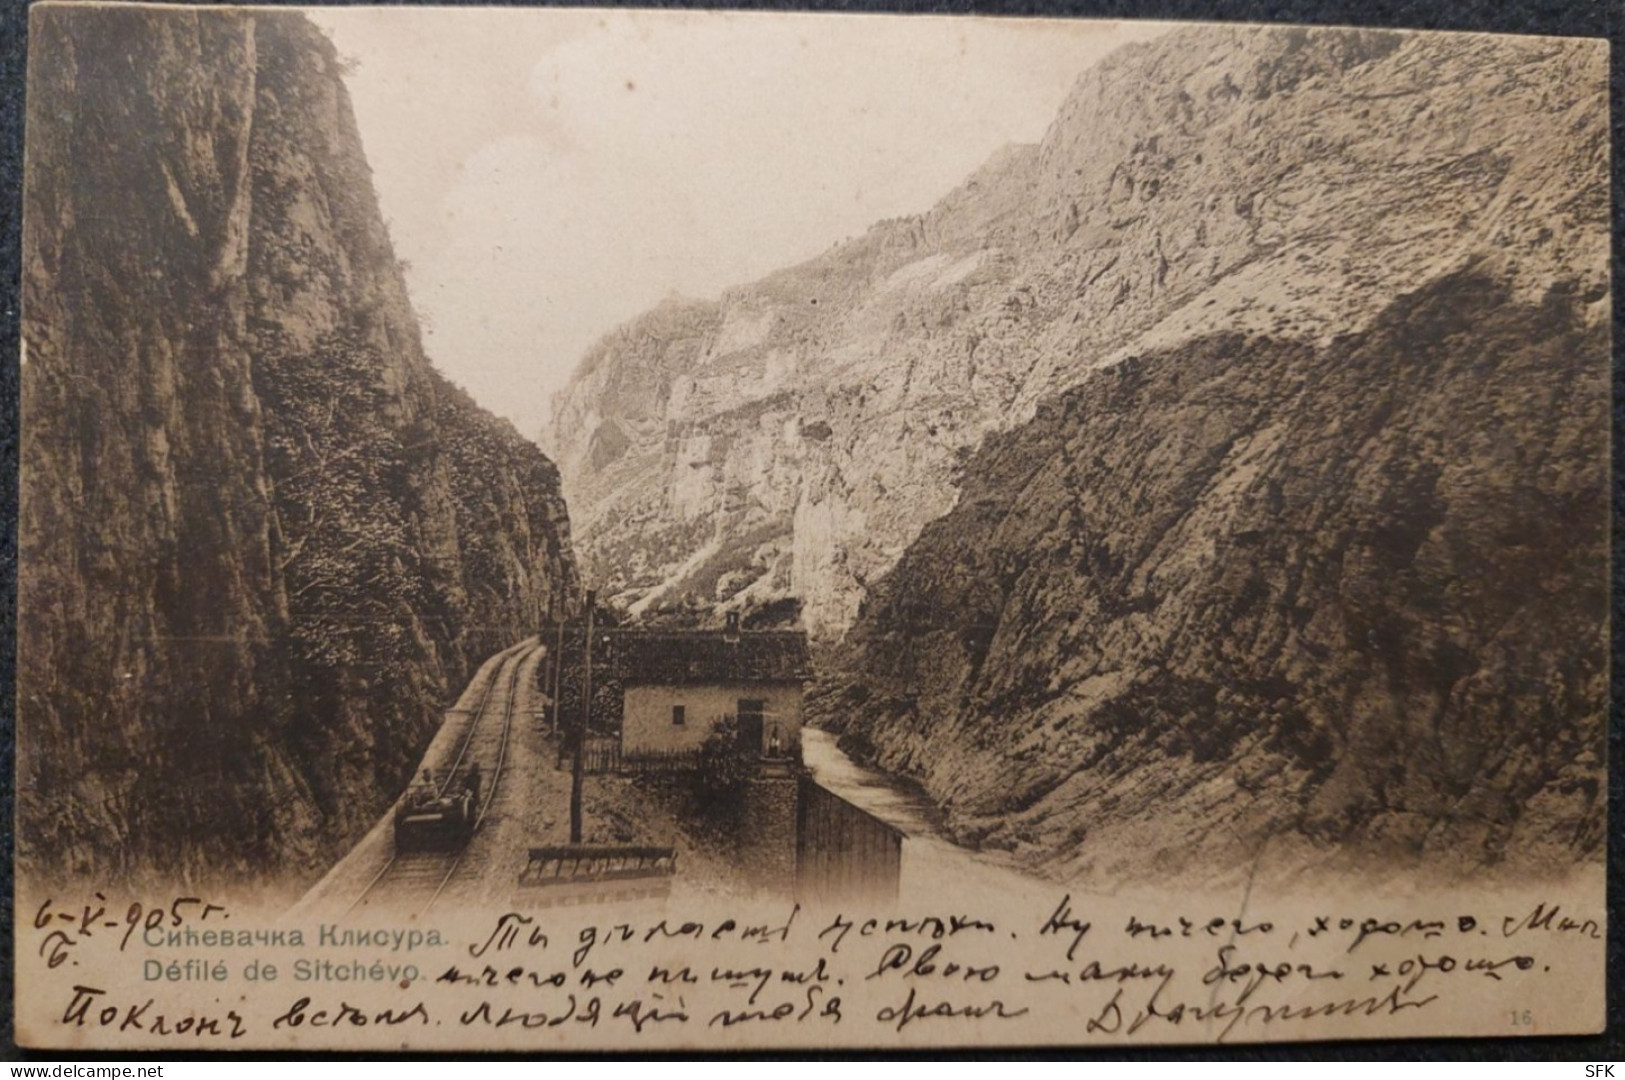 1905 Sicevac Gorge In Serbia Railway Track With Fanicular I- VF 307 - Funicular Railway